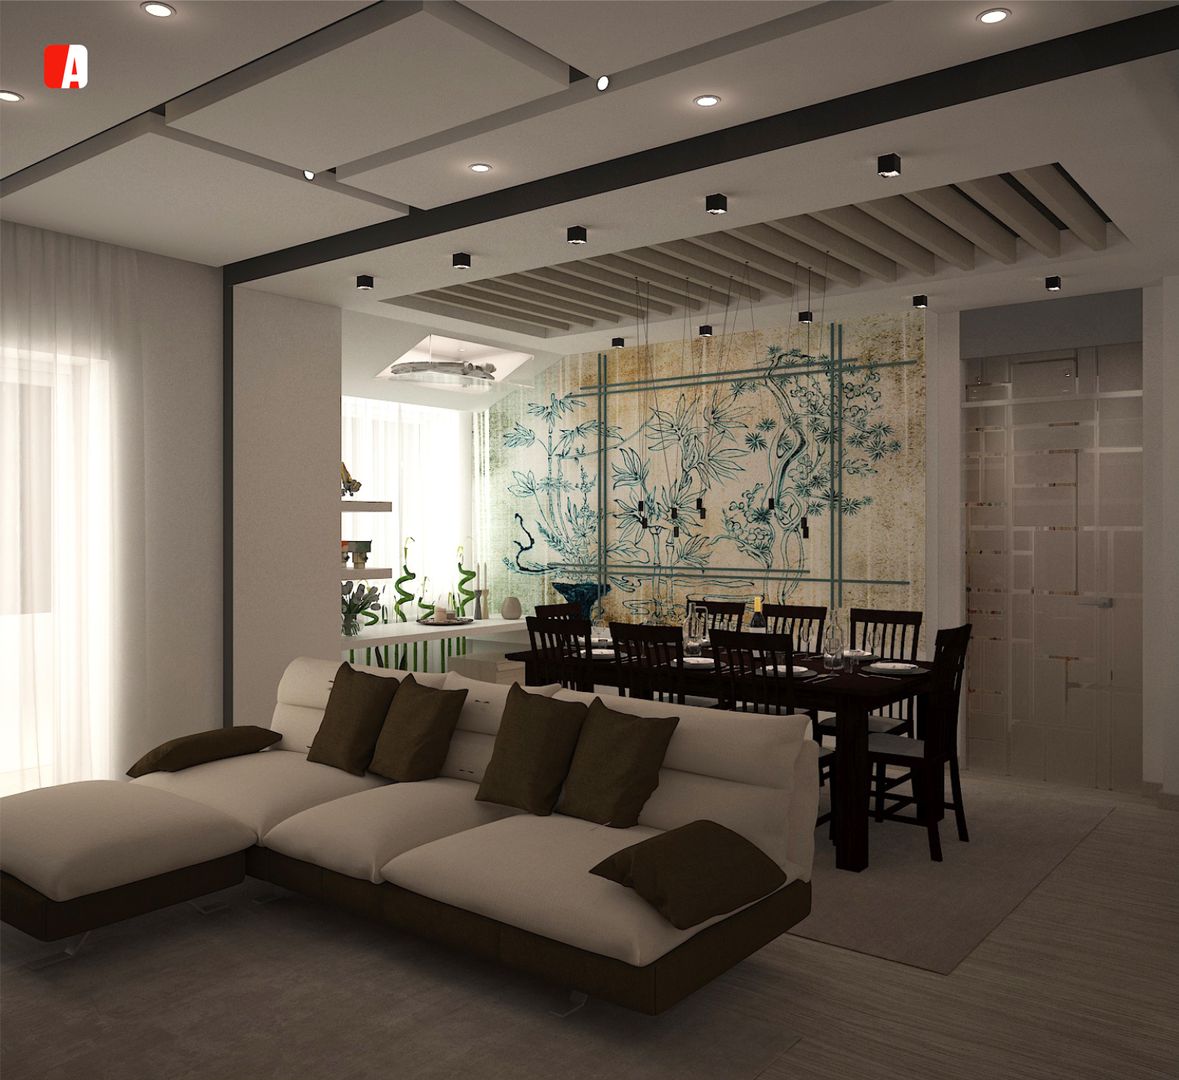 #02 - All you can Build, Il Migliore Architetto Il Migliore Architetto Modern living room